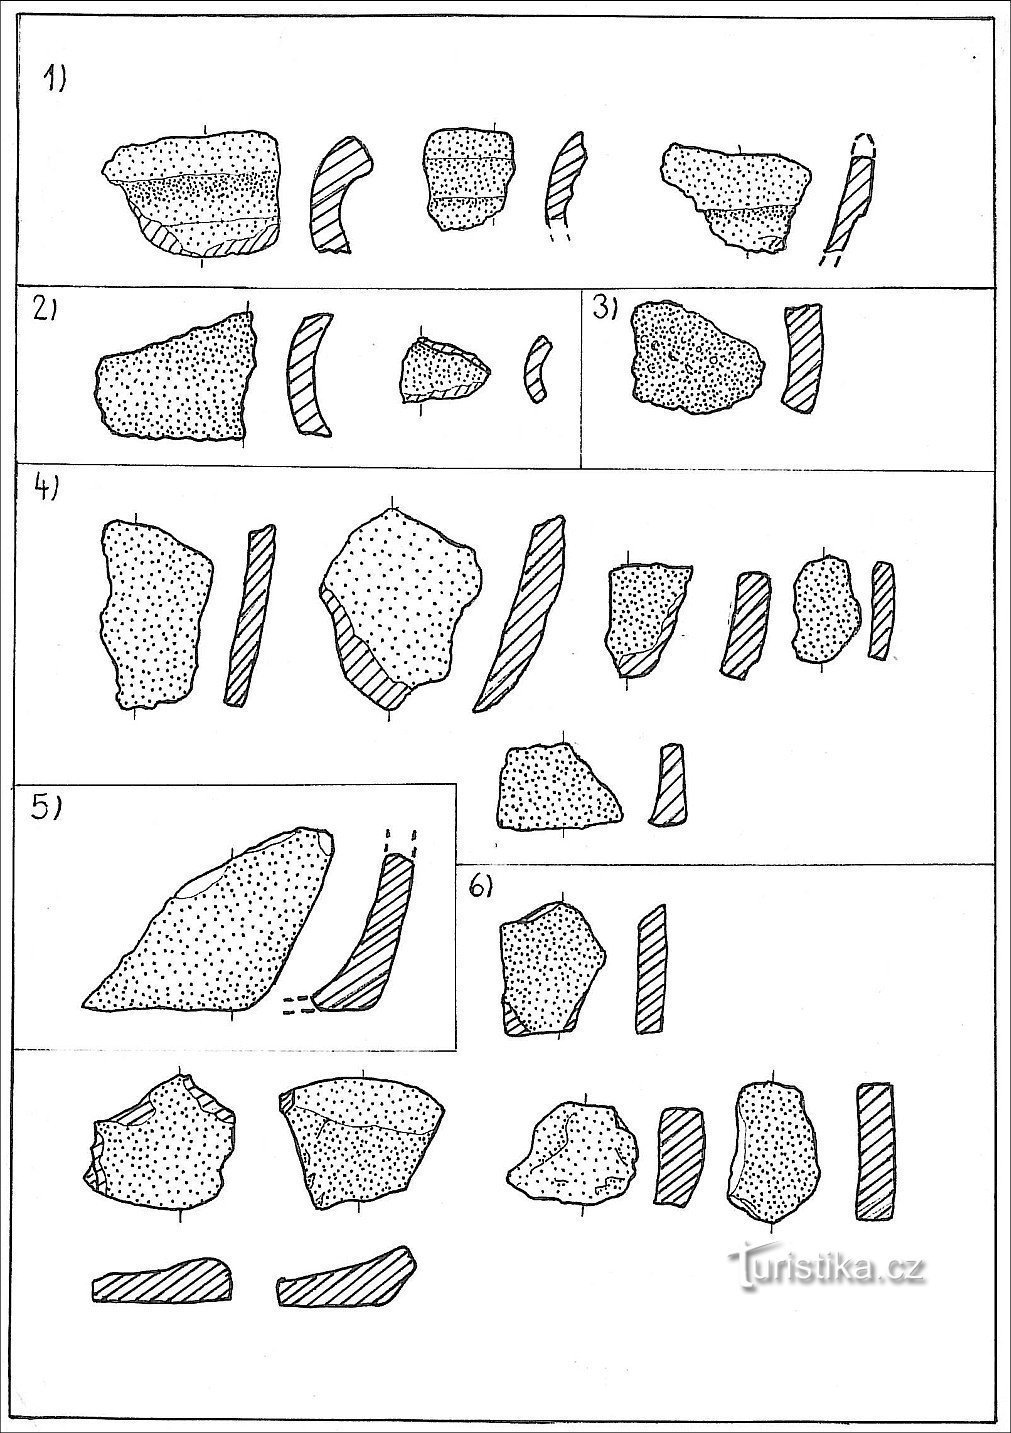 primjerci gradinske keramike; 1) rubovi, 2) grlo, 3) ramena, 4) tijelo, 5) baza, 6) donji dio